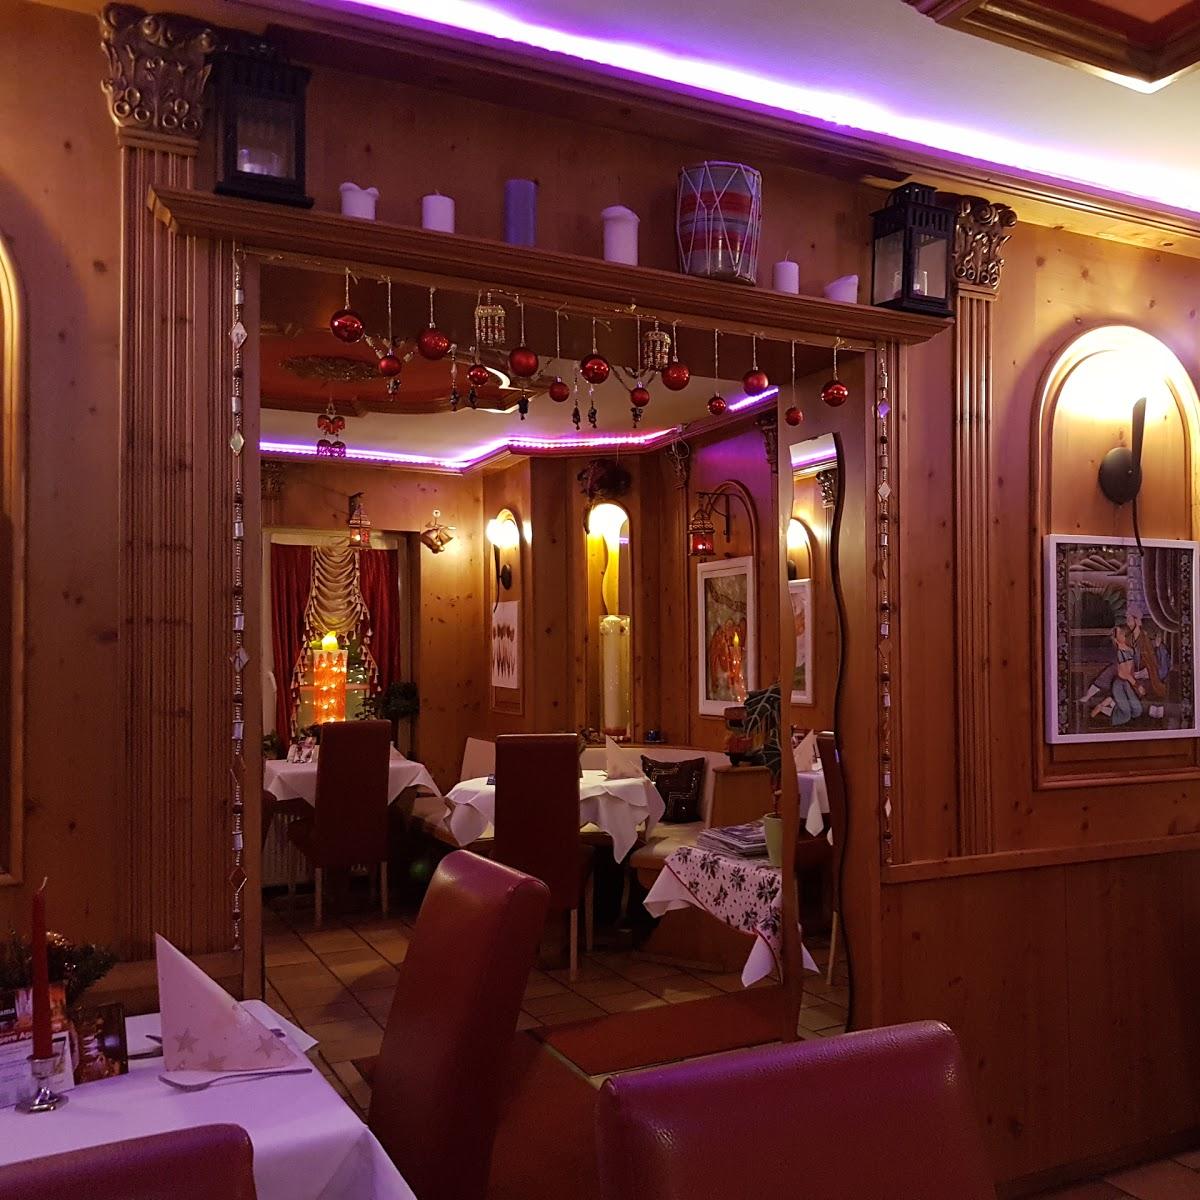 Restaurant "Schama - Die Flamme Indiens" in Königstein im Taunus